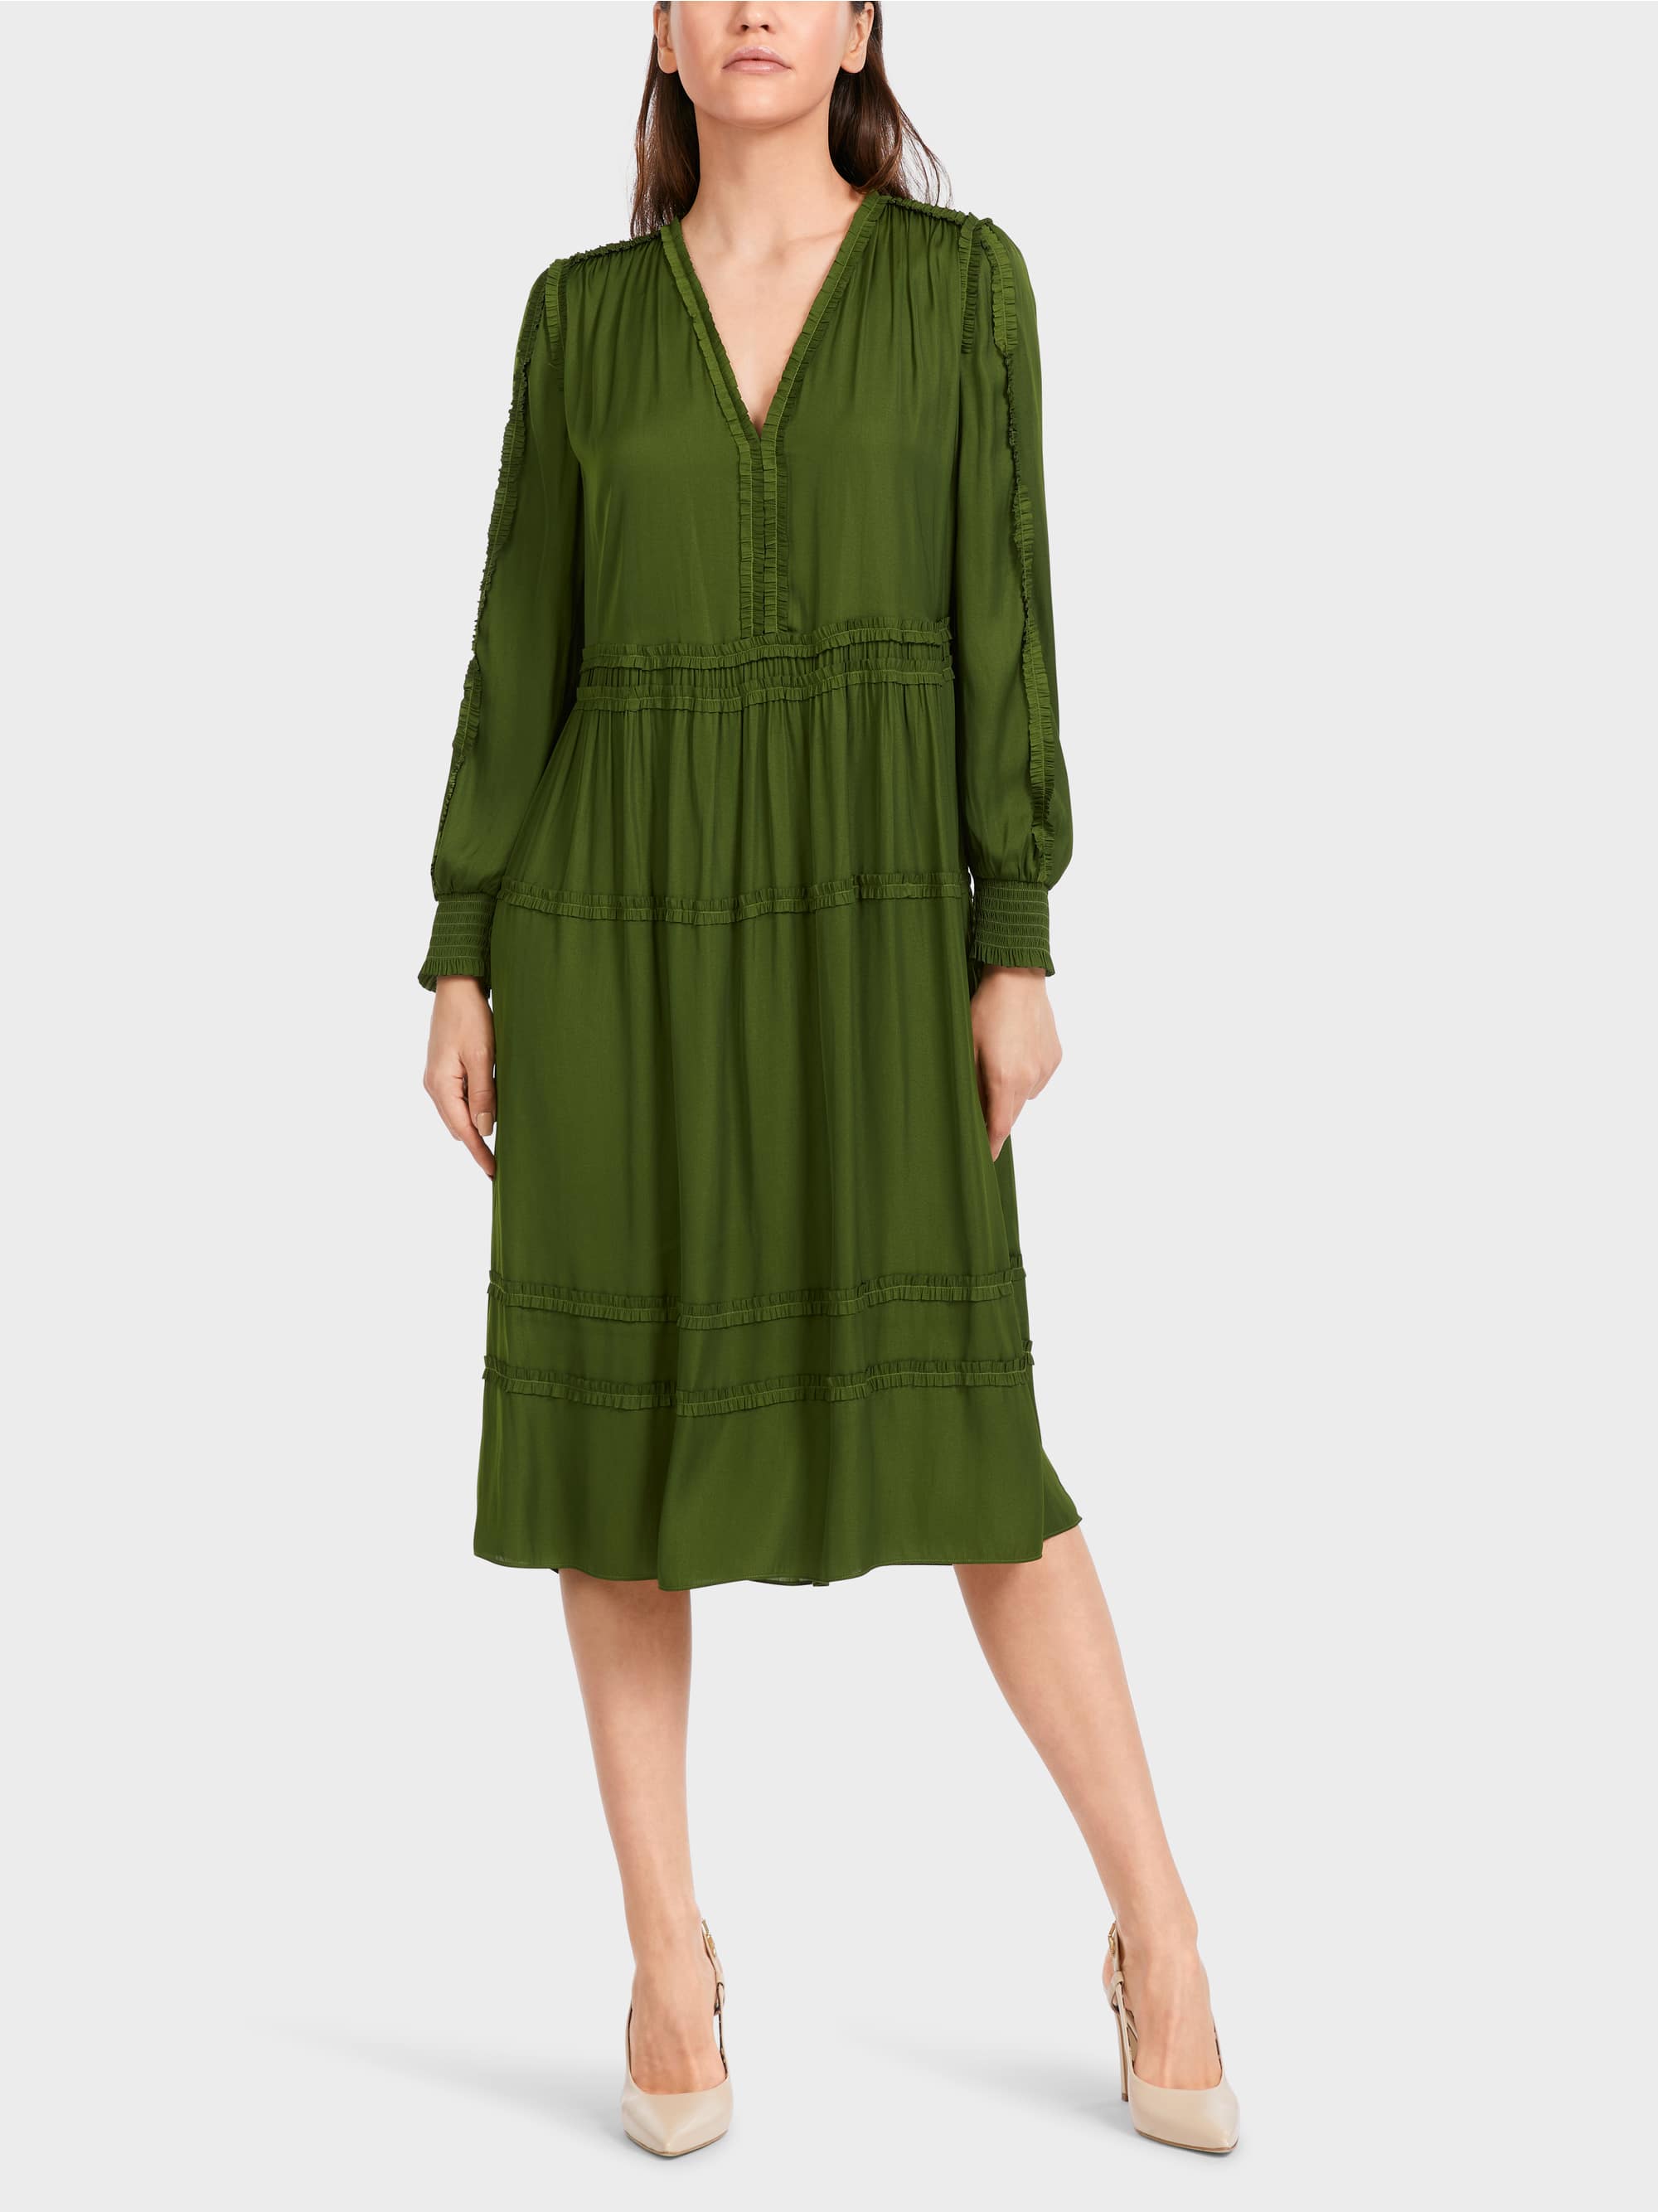 orient green dress